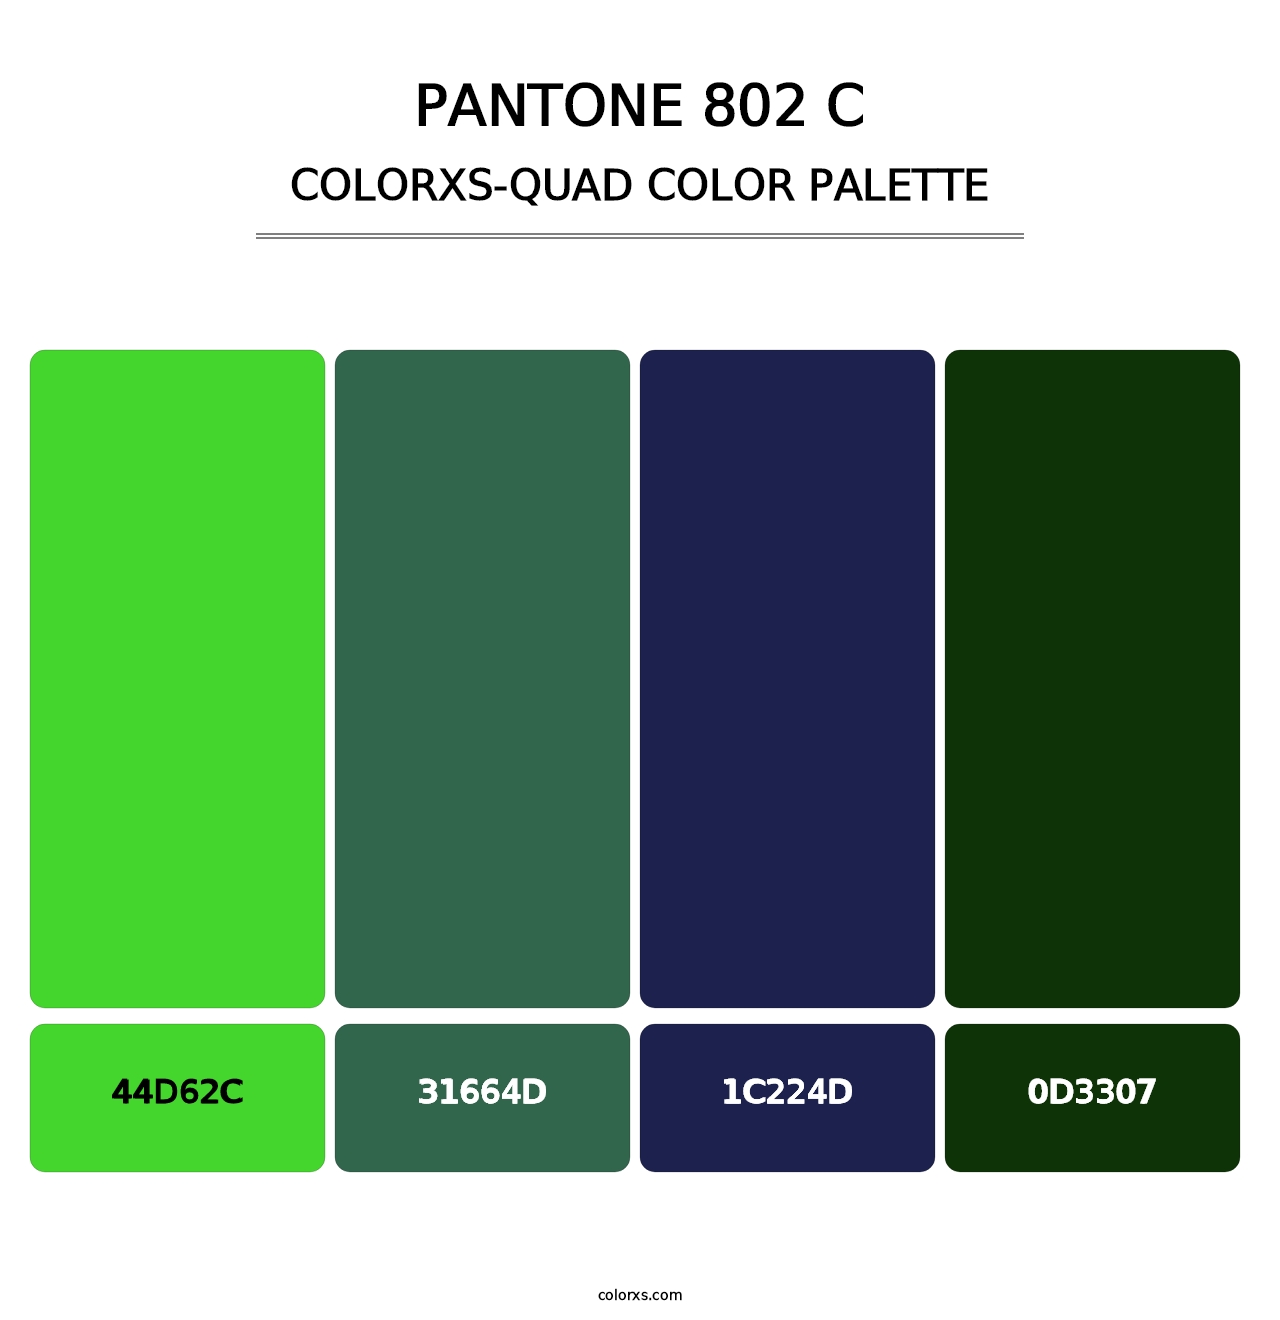 PANTONE 802 C - Colorxs Quad Palette